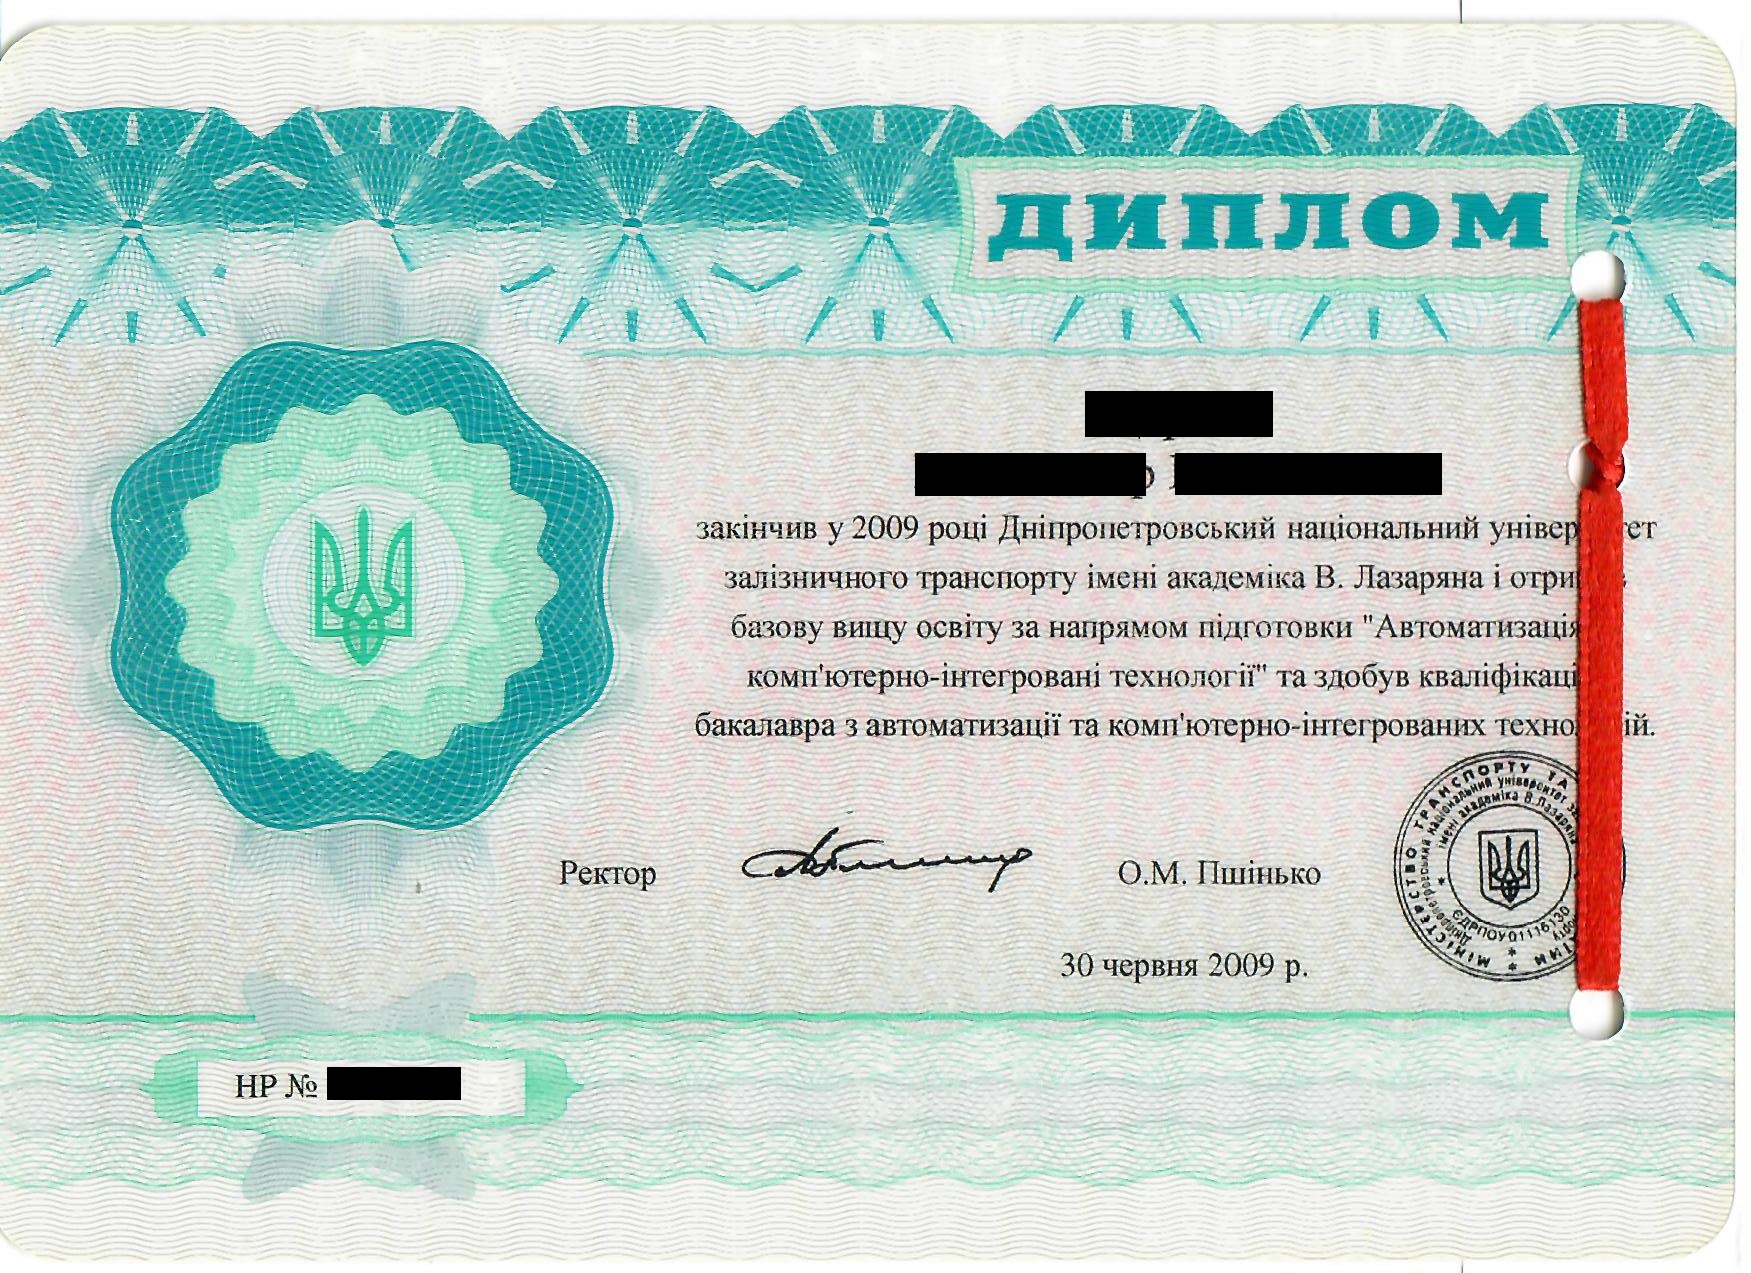 Beispiel für ein Diplom aus der Ukraine